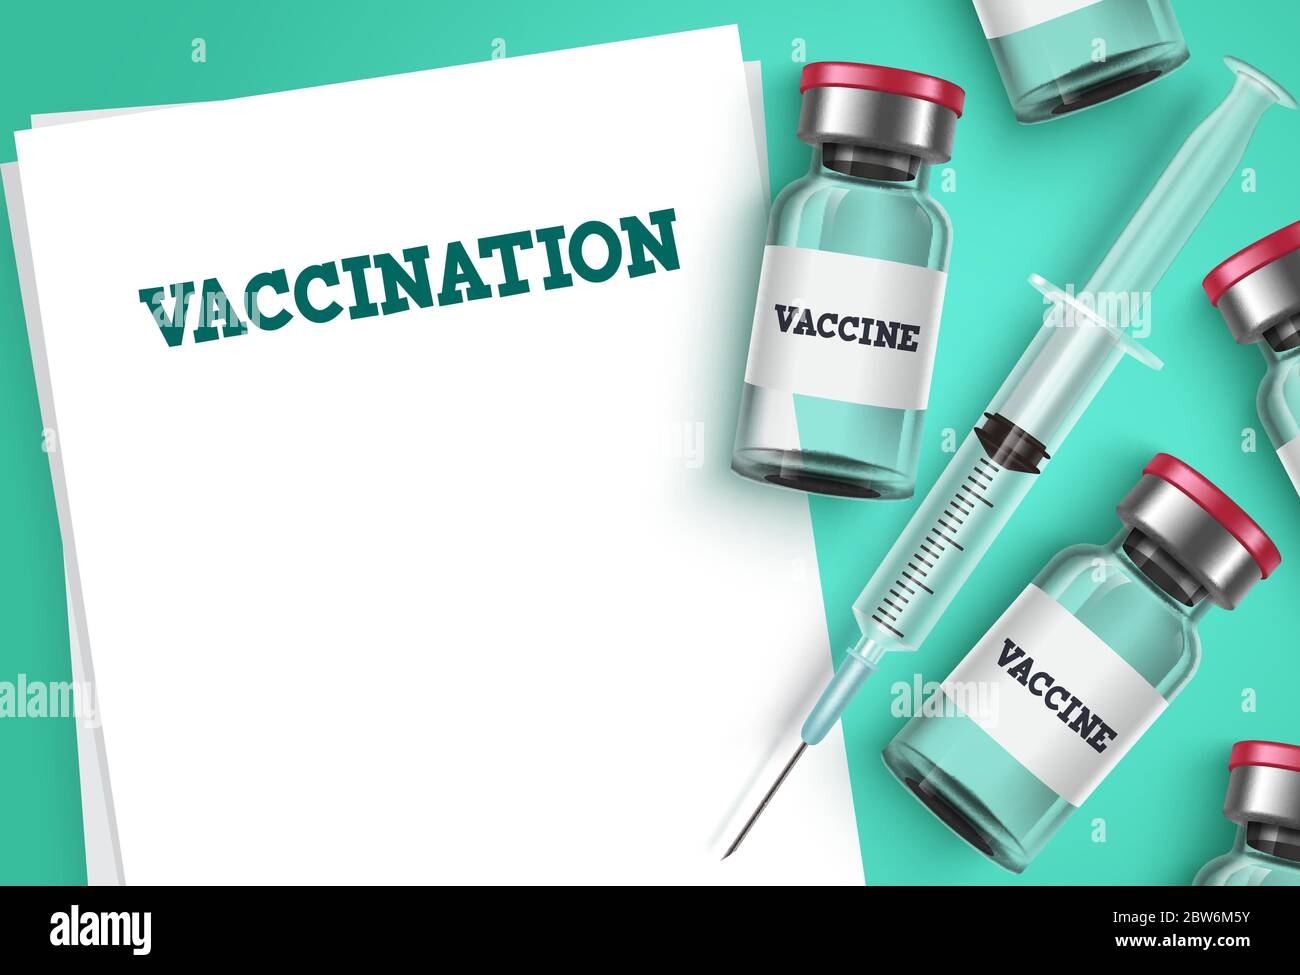 Hintergrundvorlage für Impfvektoren. Impfschuss, Spritzenspritze und leere leere leere Rezept Papier mit Impftext für Covid-19 Virus. Stock Vektor